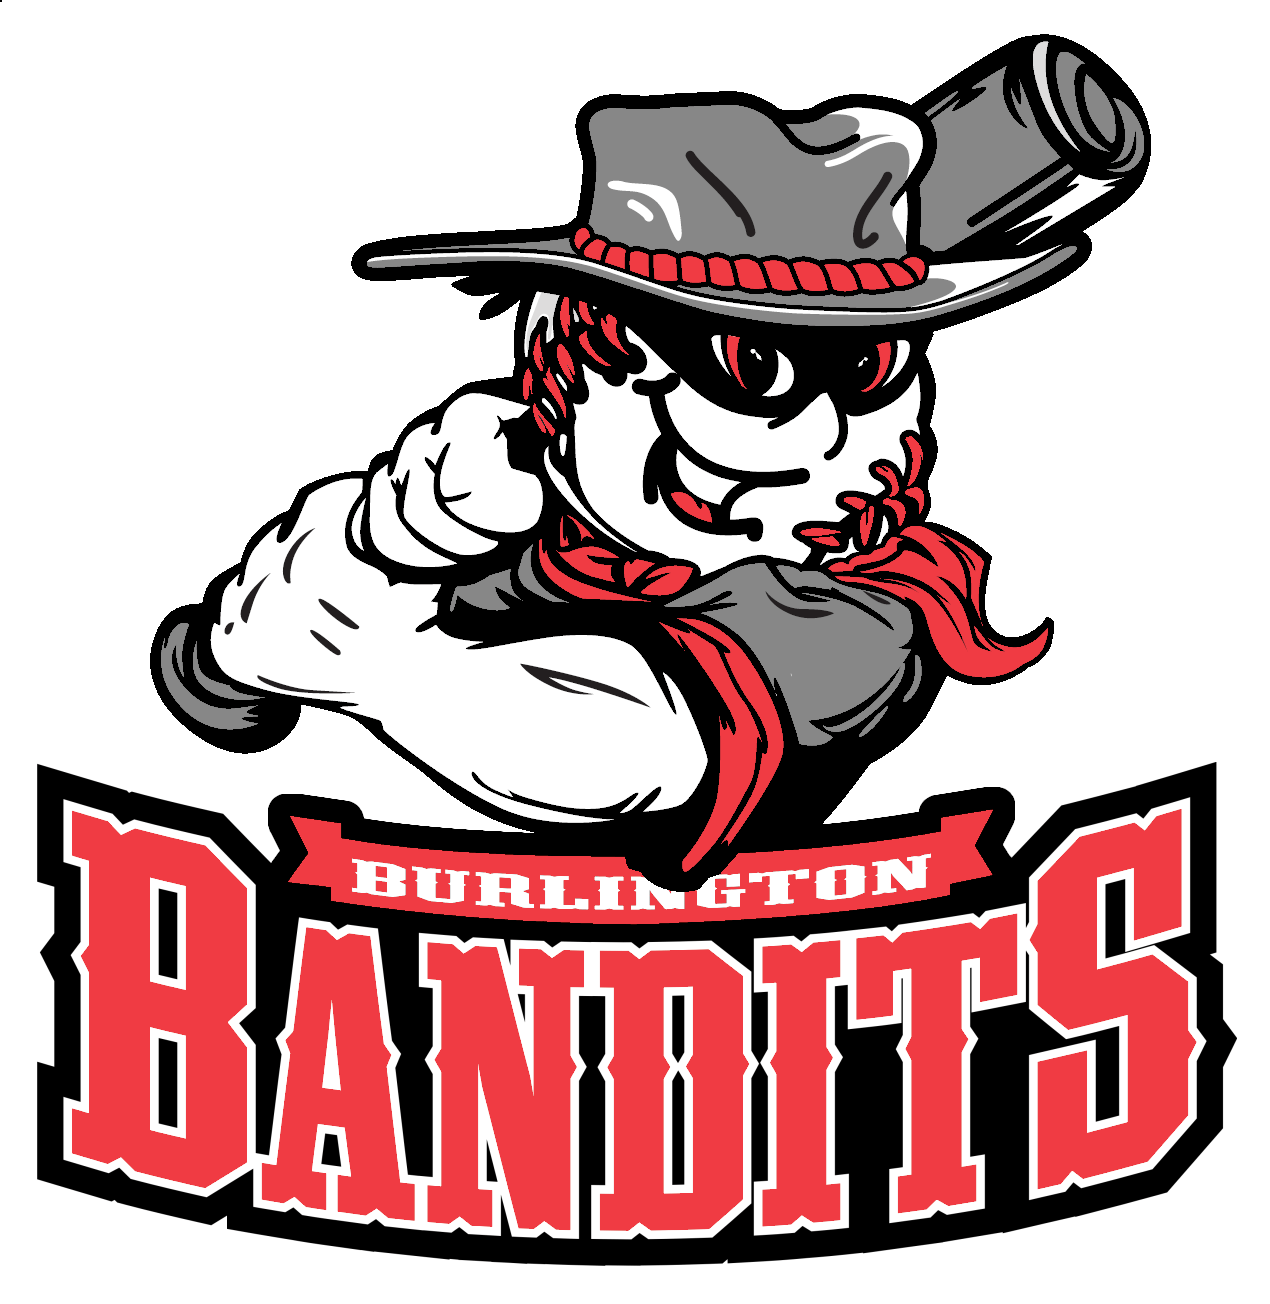 Official Bandits Gear